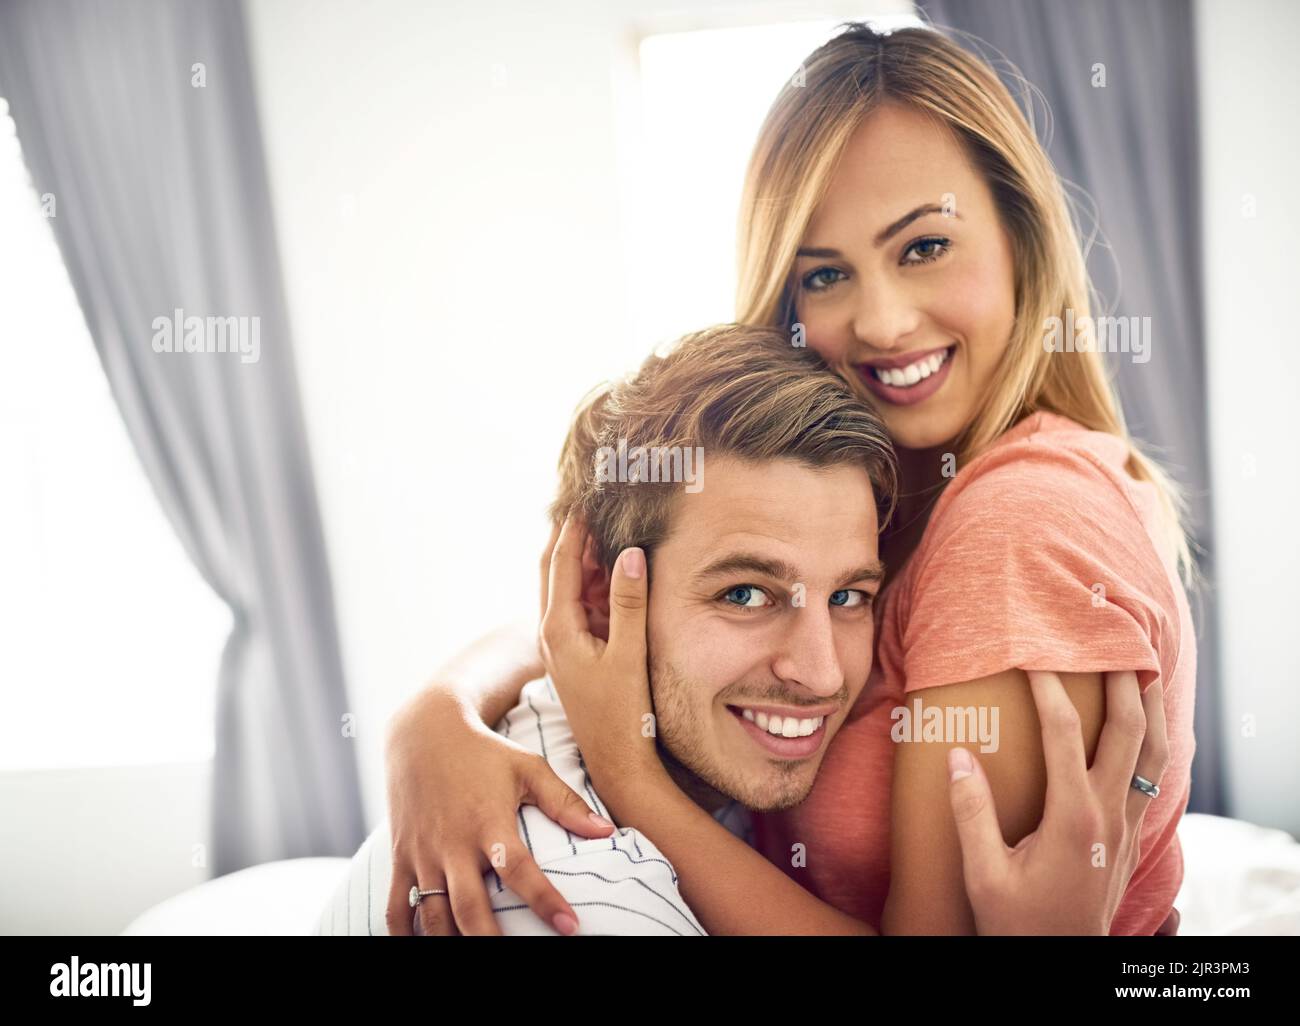 Son sourire inspire le mien. Un jeune couple heureux qui partage un moment affectueux au lit. Banque D'Images